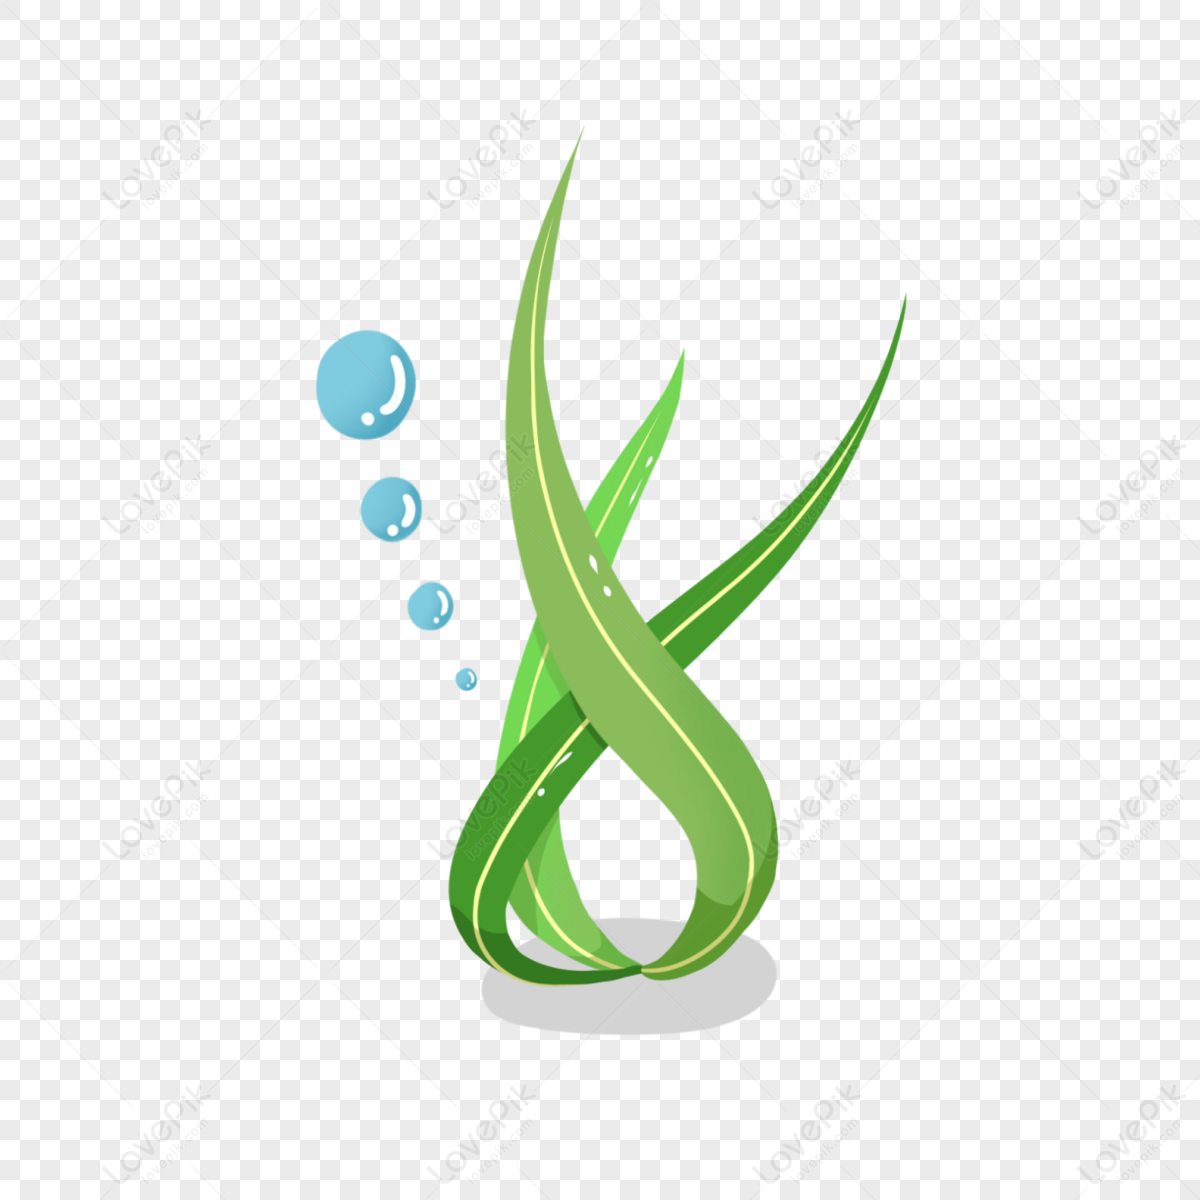 Desenhos Animados Algas Waterweed Pintados à Mão Em Aquarela PNG Imagens  Gratuitas Para Download - Lovepik